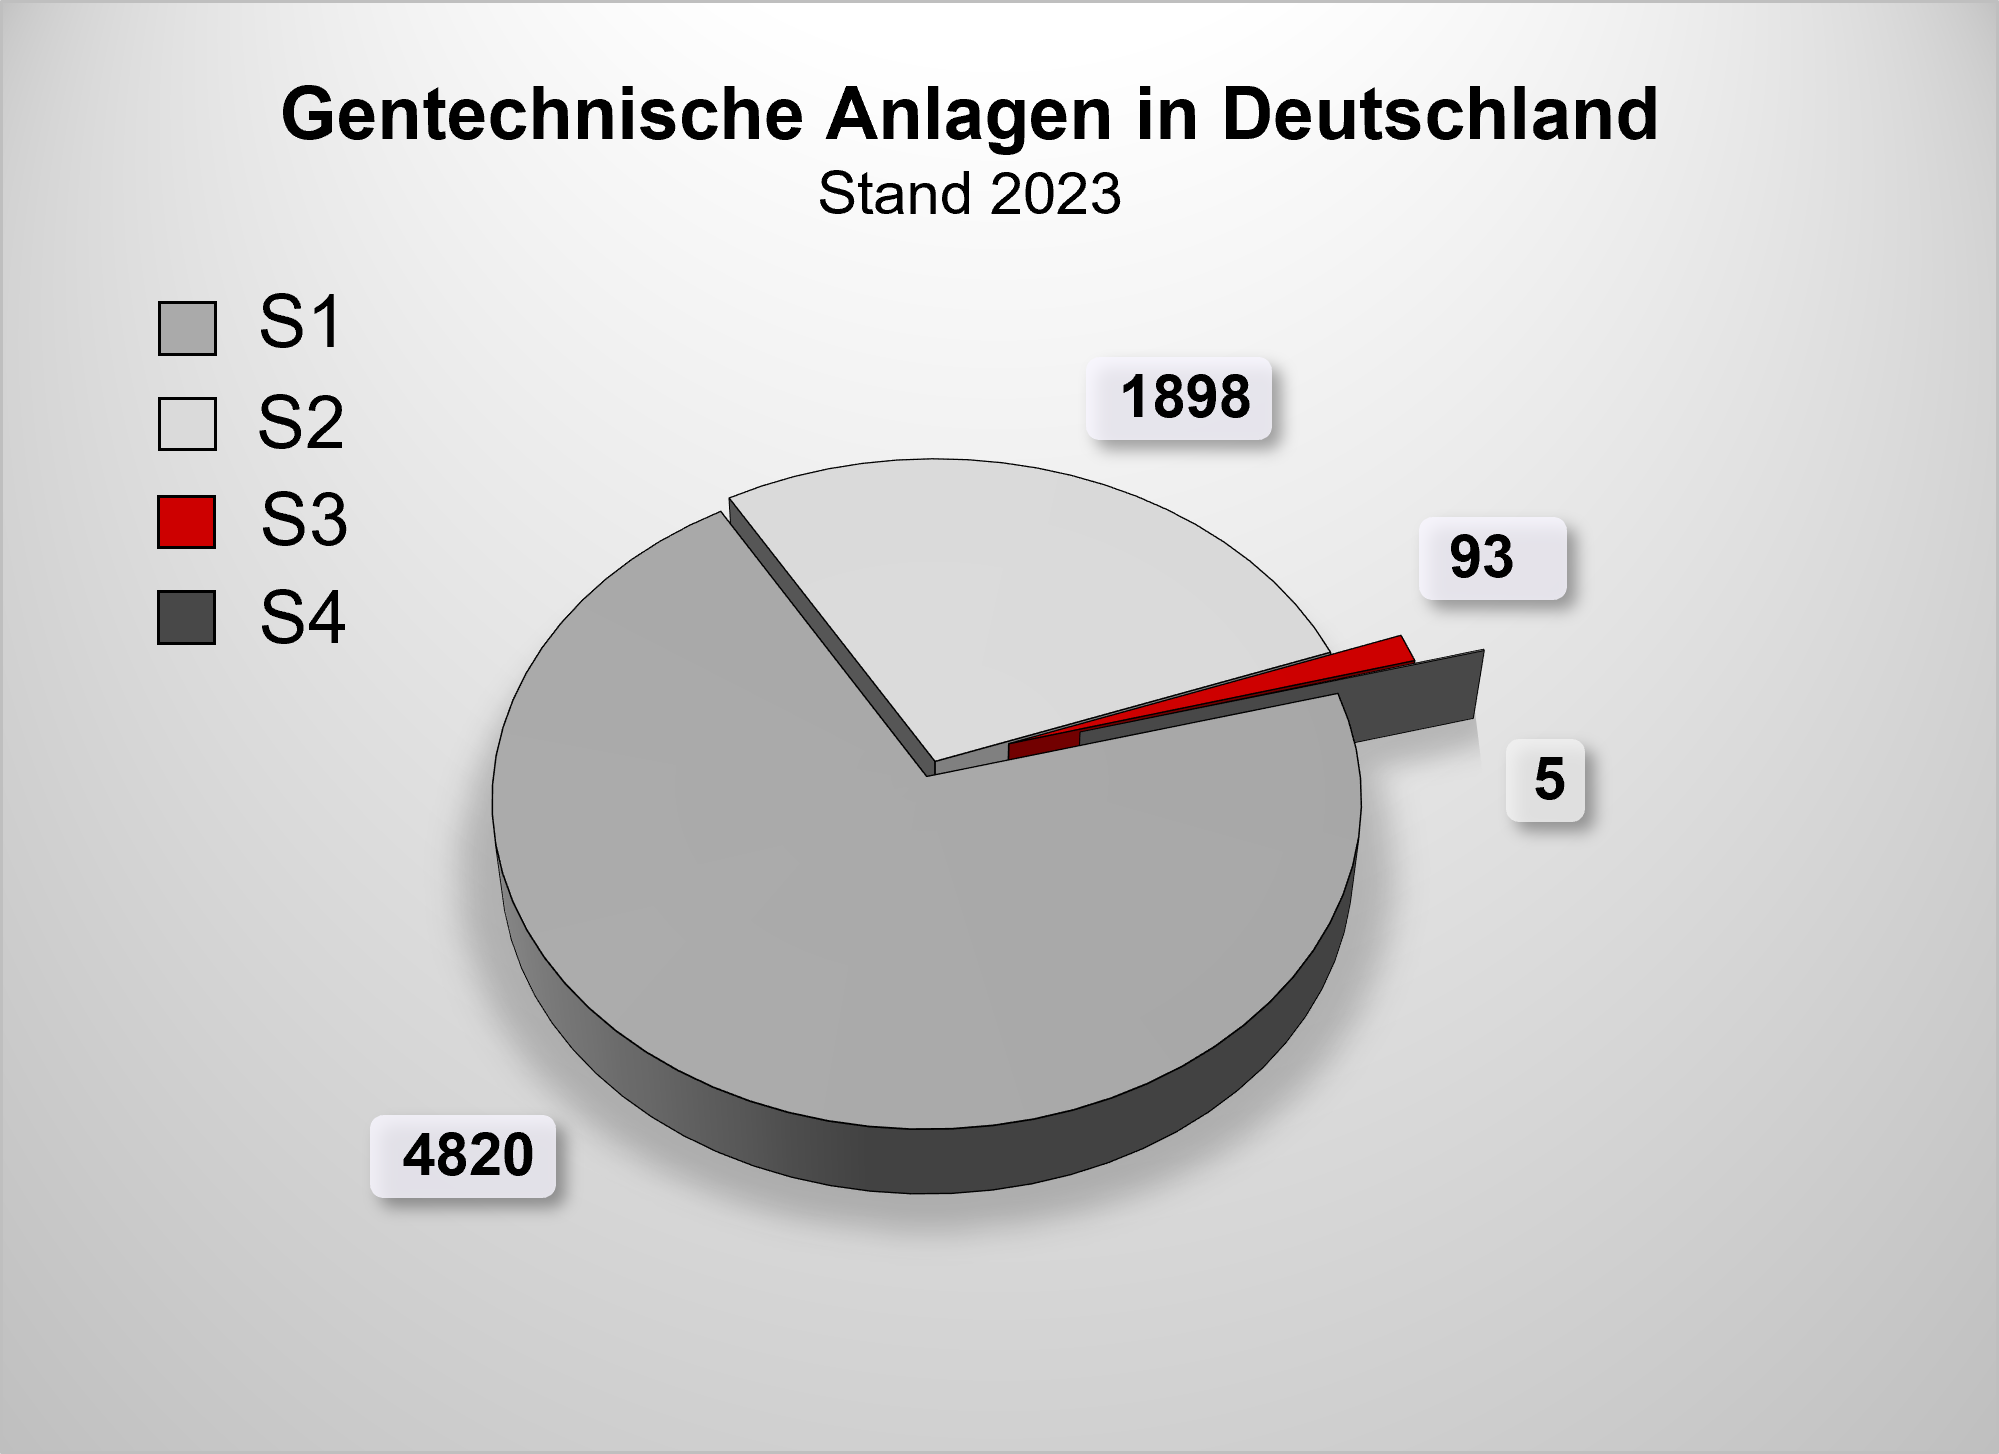 Grafik die die Zahl von gentechnischen Anlagen der Sicherheitsstufe S1, S2, S3 und S4 in Deutschland mit Stand Dezember 2023 zusammenfasst.